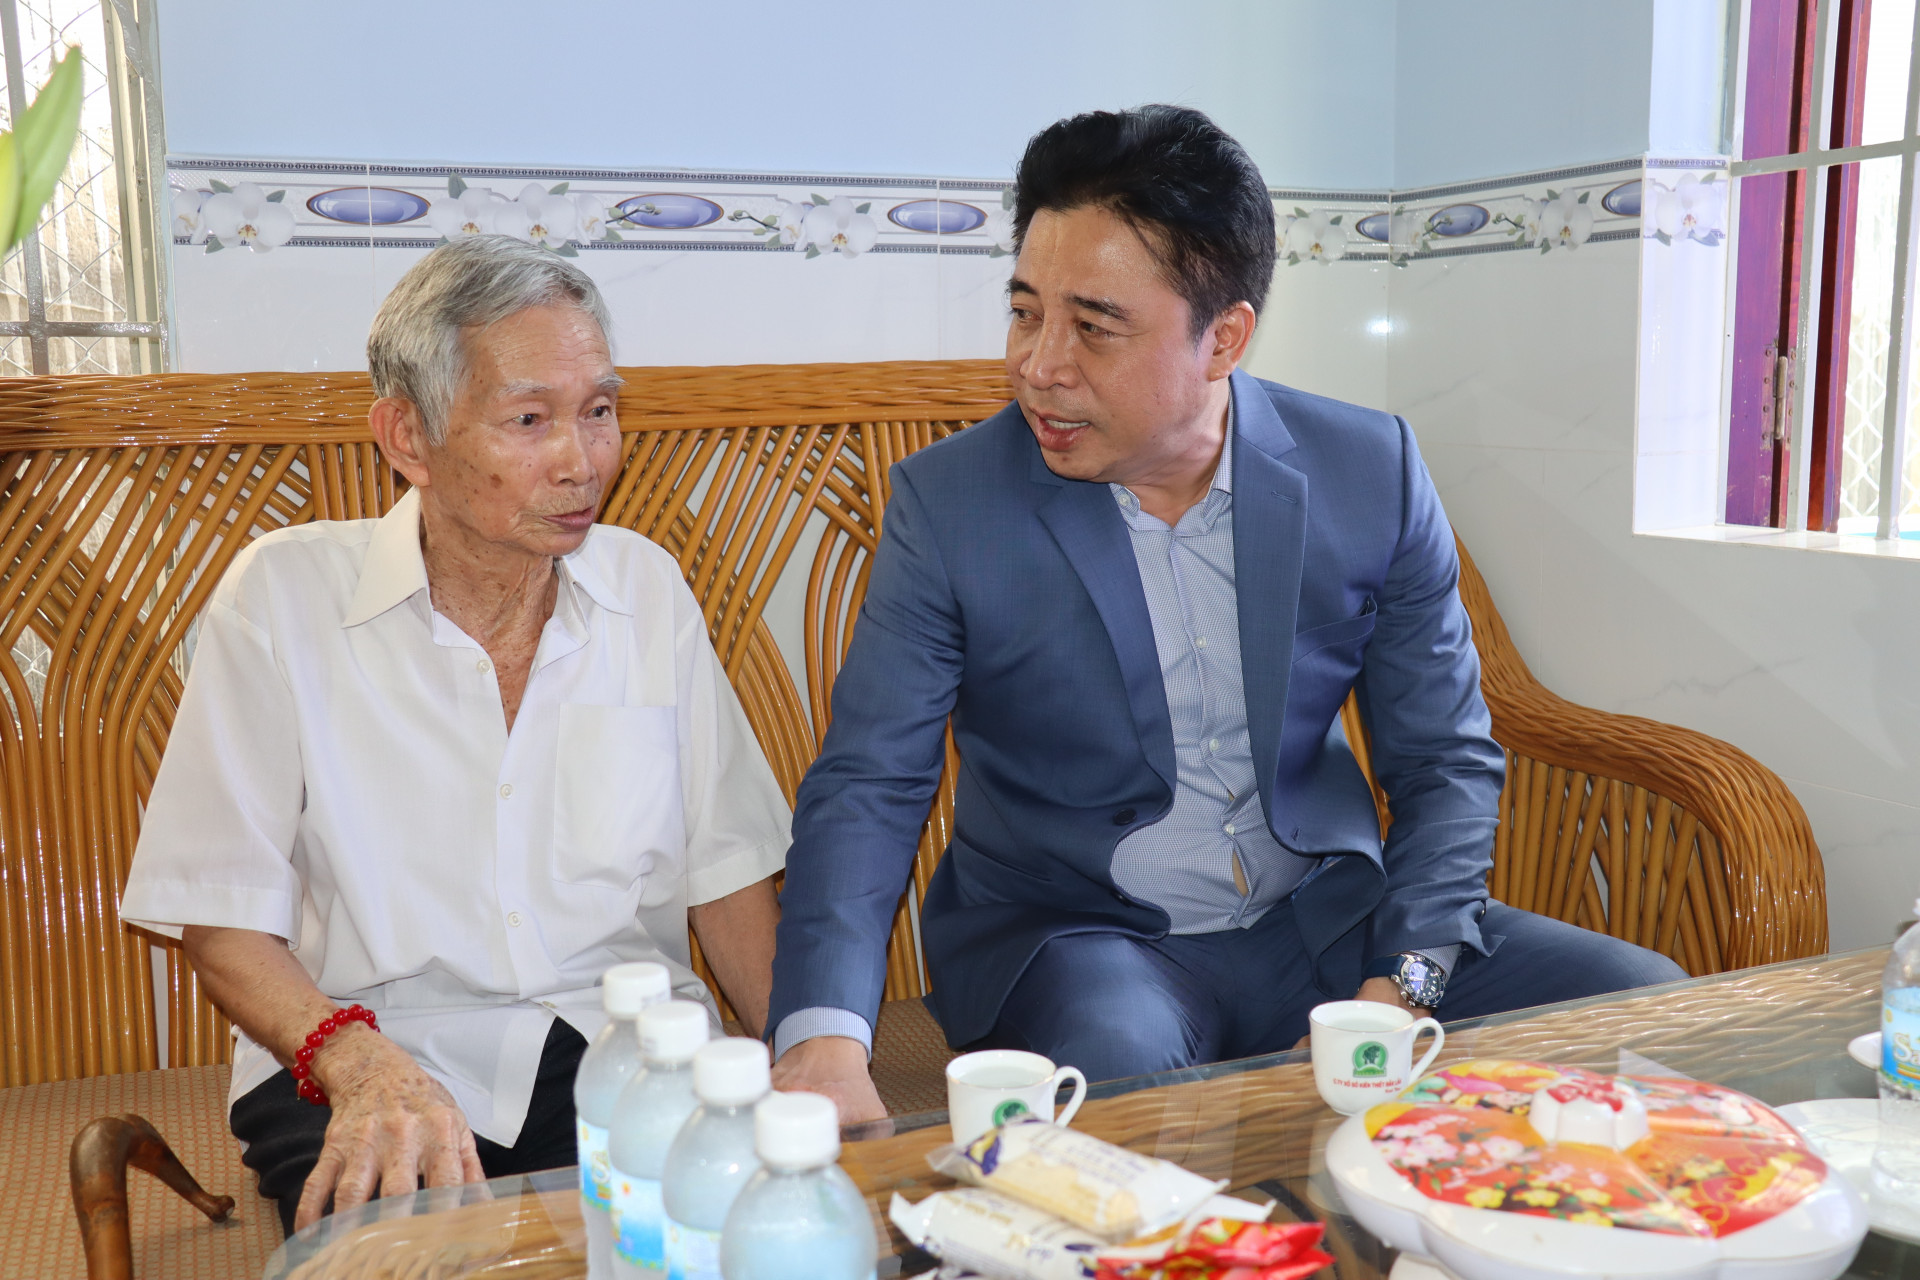  Ông Nguyễn Khắc Toàn động viên gia đình công chức Trần Văn Hoàng.